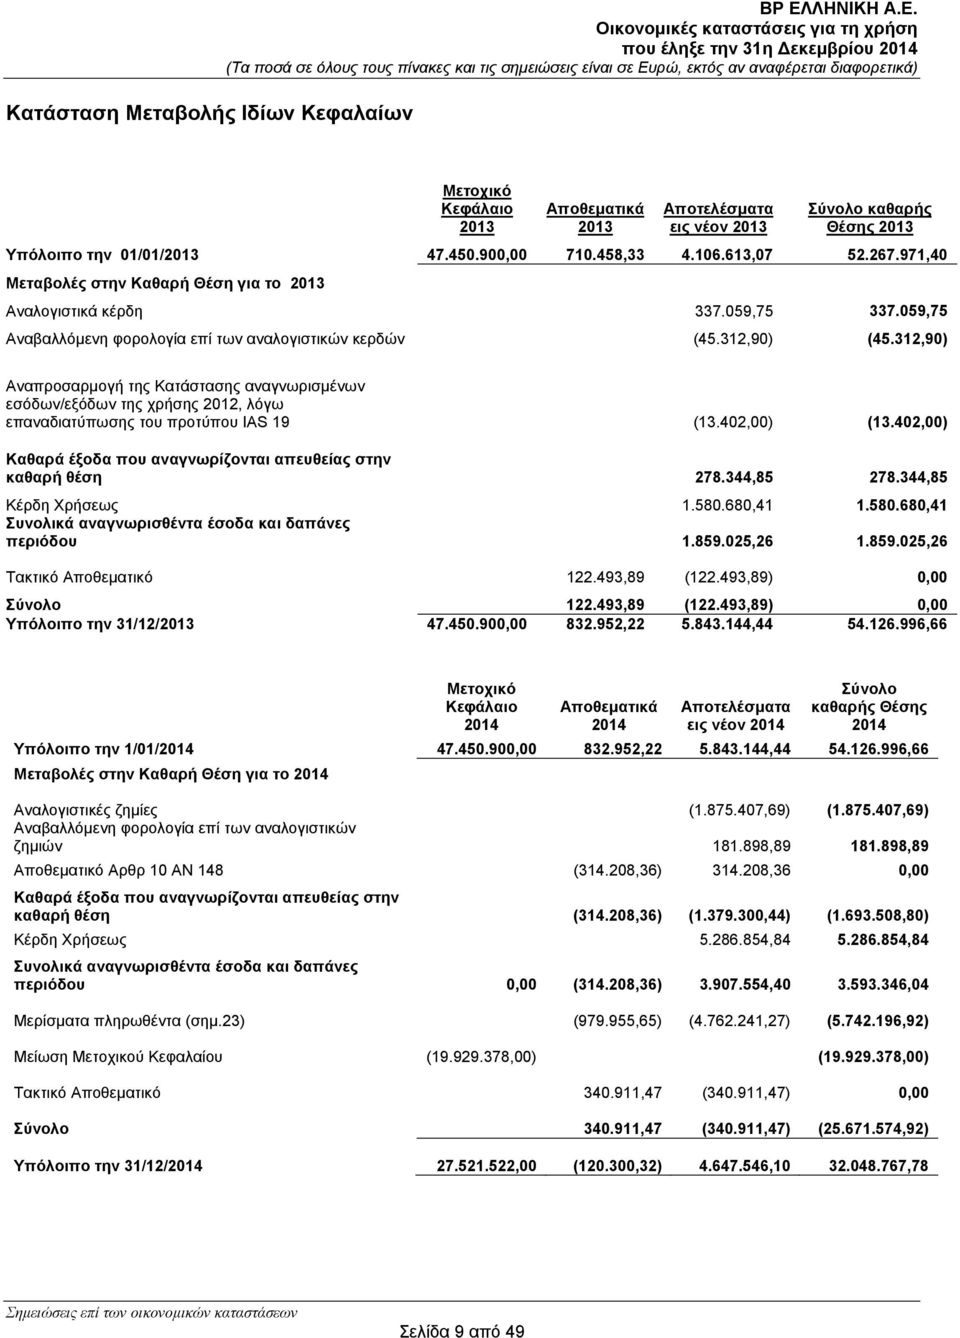 312,90) Αναπροσαρμογή της Κατάστασης αναγνωρισμένων εσόδων/εξόδων της χρήσης 2012, λόγω επαναδιατύπωσης του προτύπου IAS 19 (13.402,00) (13.